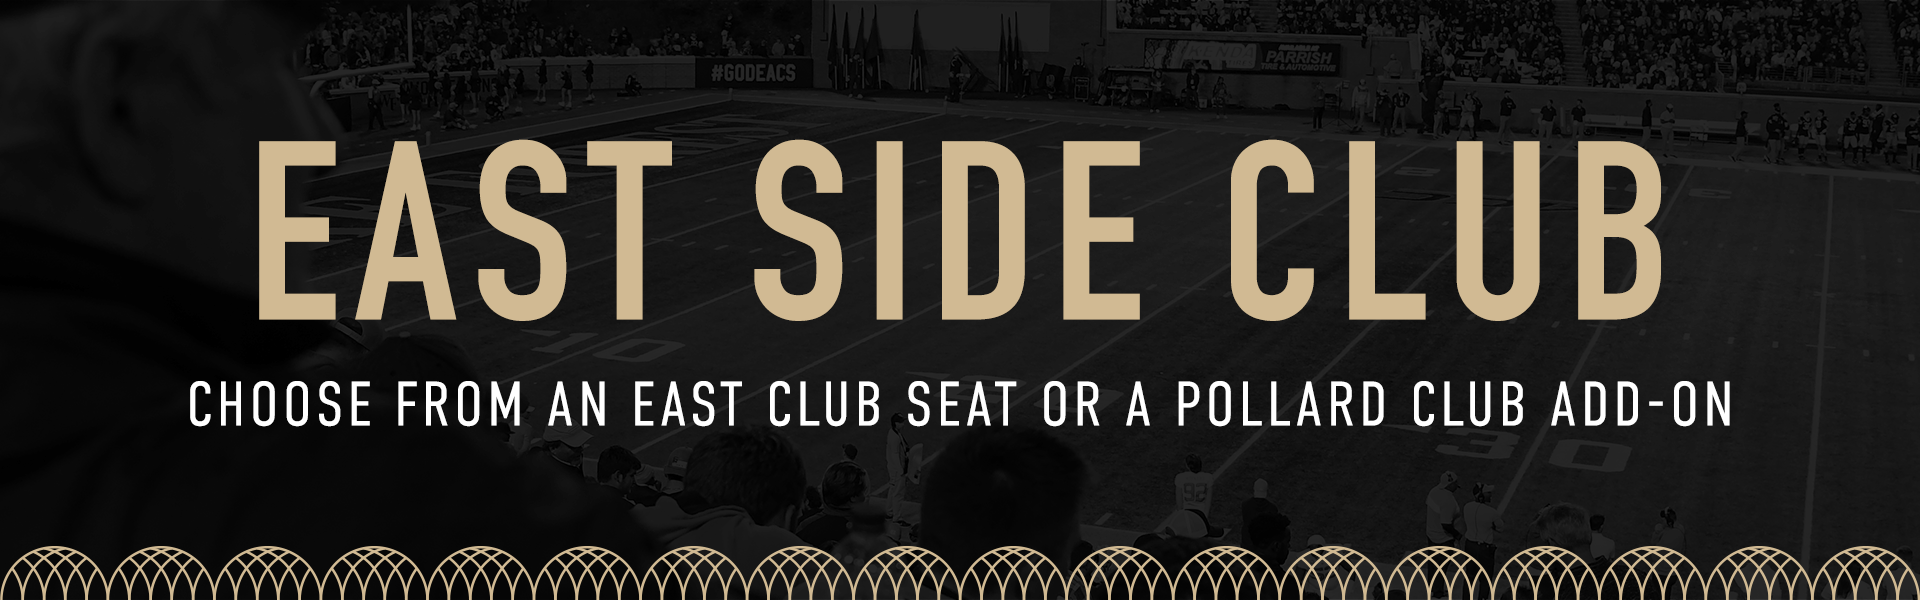 East Side Club | Choose from an East Club Seat or a Pollard Club Add-On